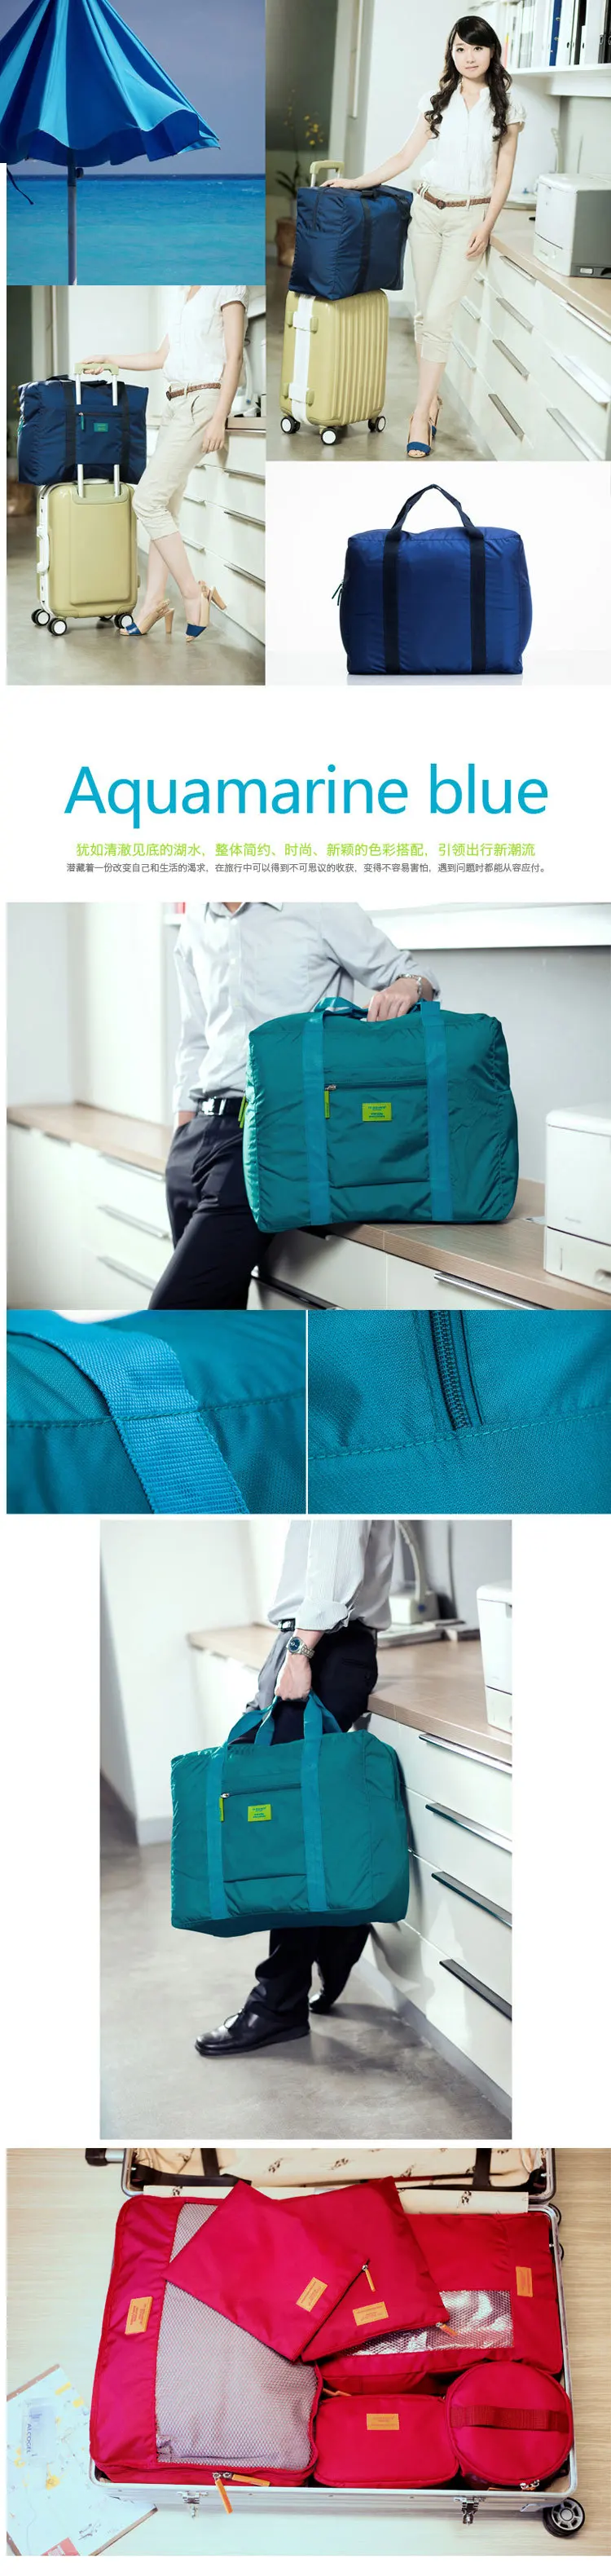 2018 Специальное предложение Для женщин чемодан дорожные сумки Водонепроницаемый нейлон складной путешествия получить мешок мужские и